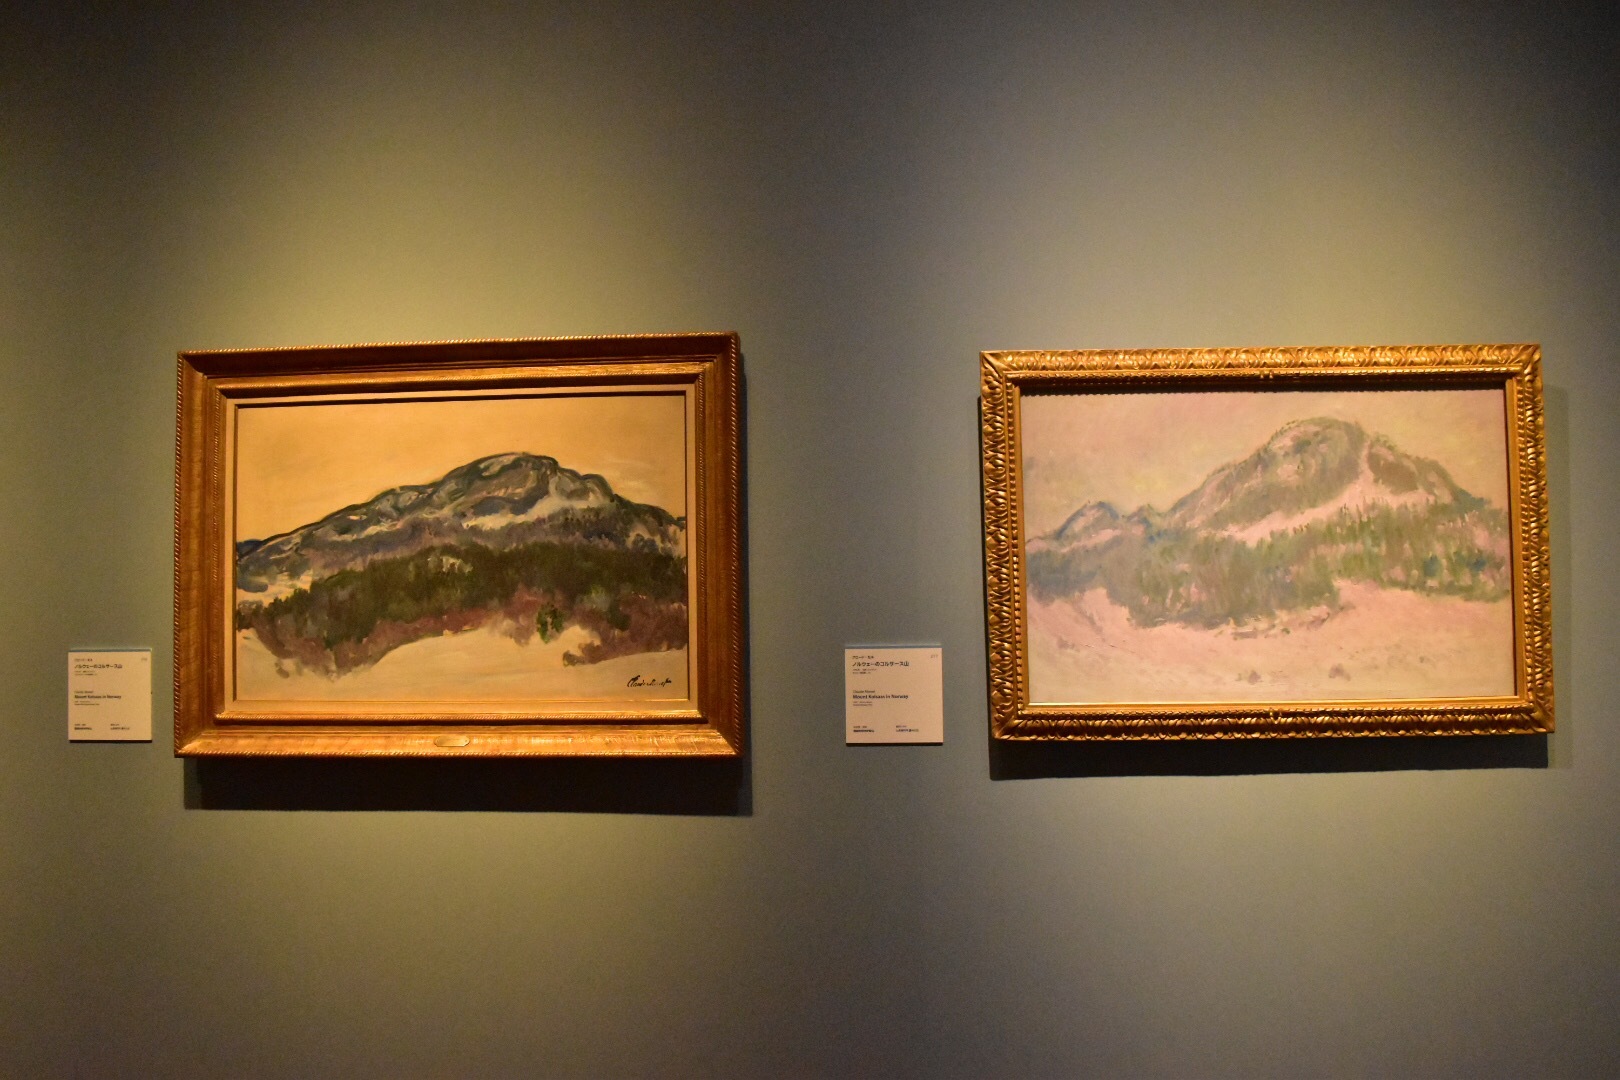 左：クロード・モネ《ノルウェーのコルサース山》1895年　マルモッタン・モネ美術館、パリ 右：クロード・モネ《ノルウェーのコルサース山》1895年　オルセー美術館、パリ